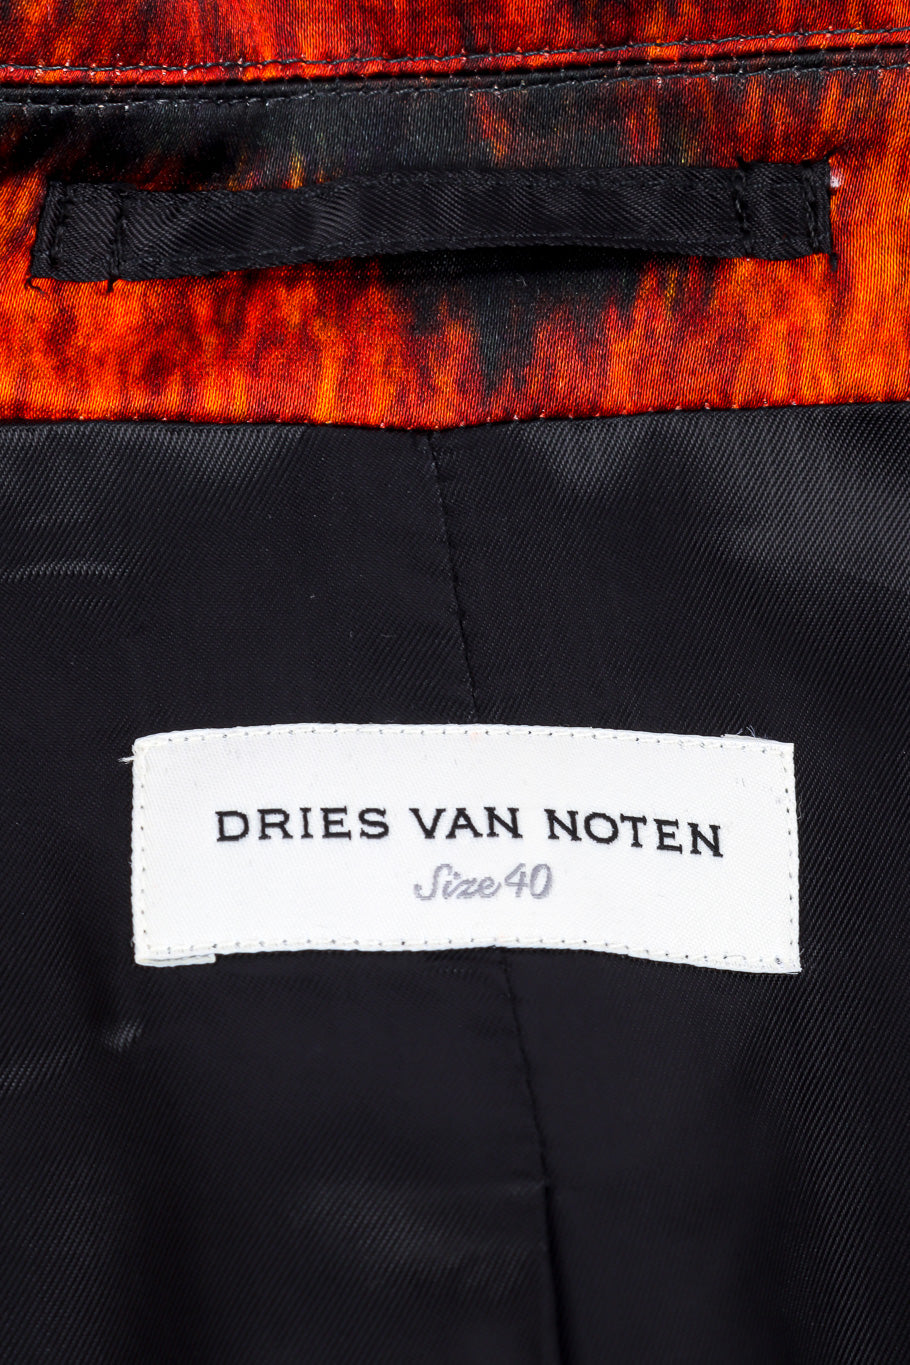 Dries Van Noten tiger duster coat designer label @recessla